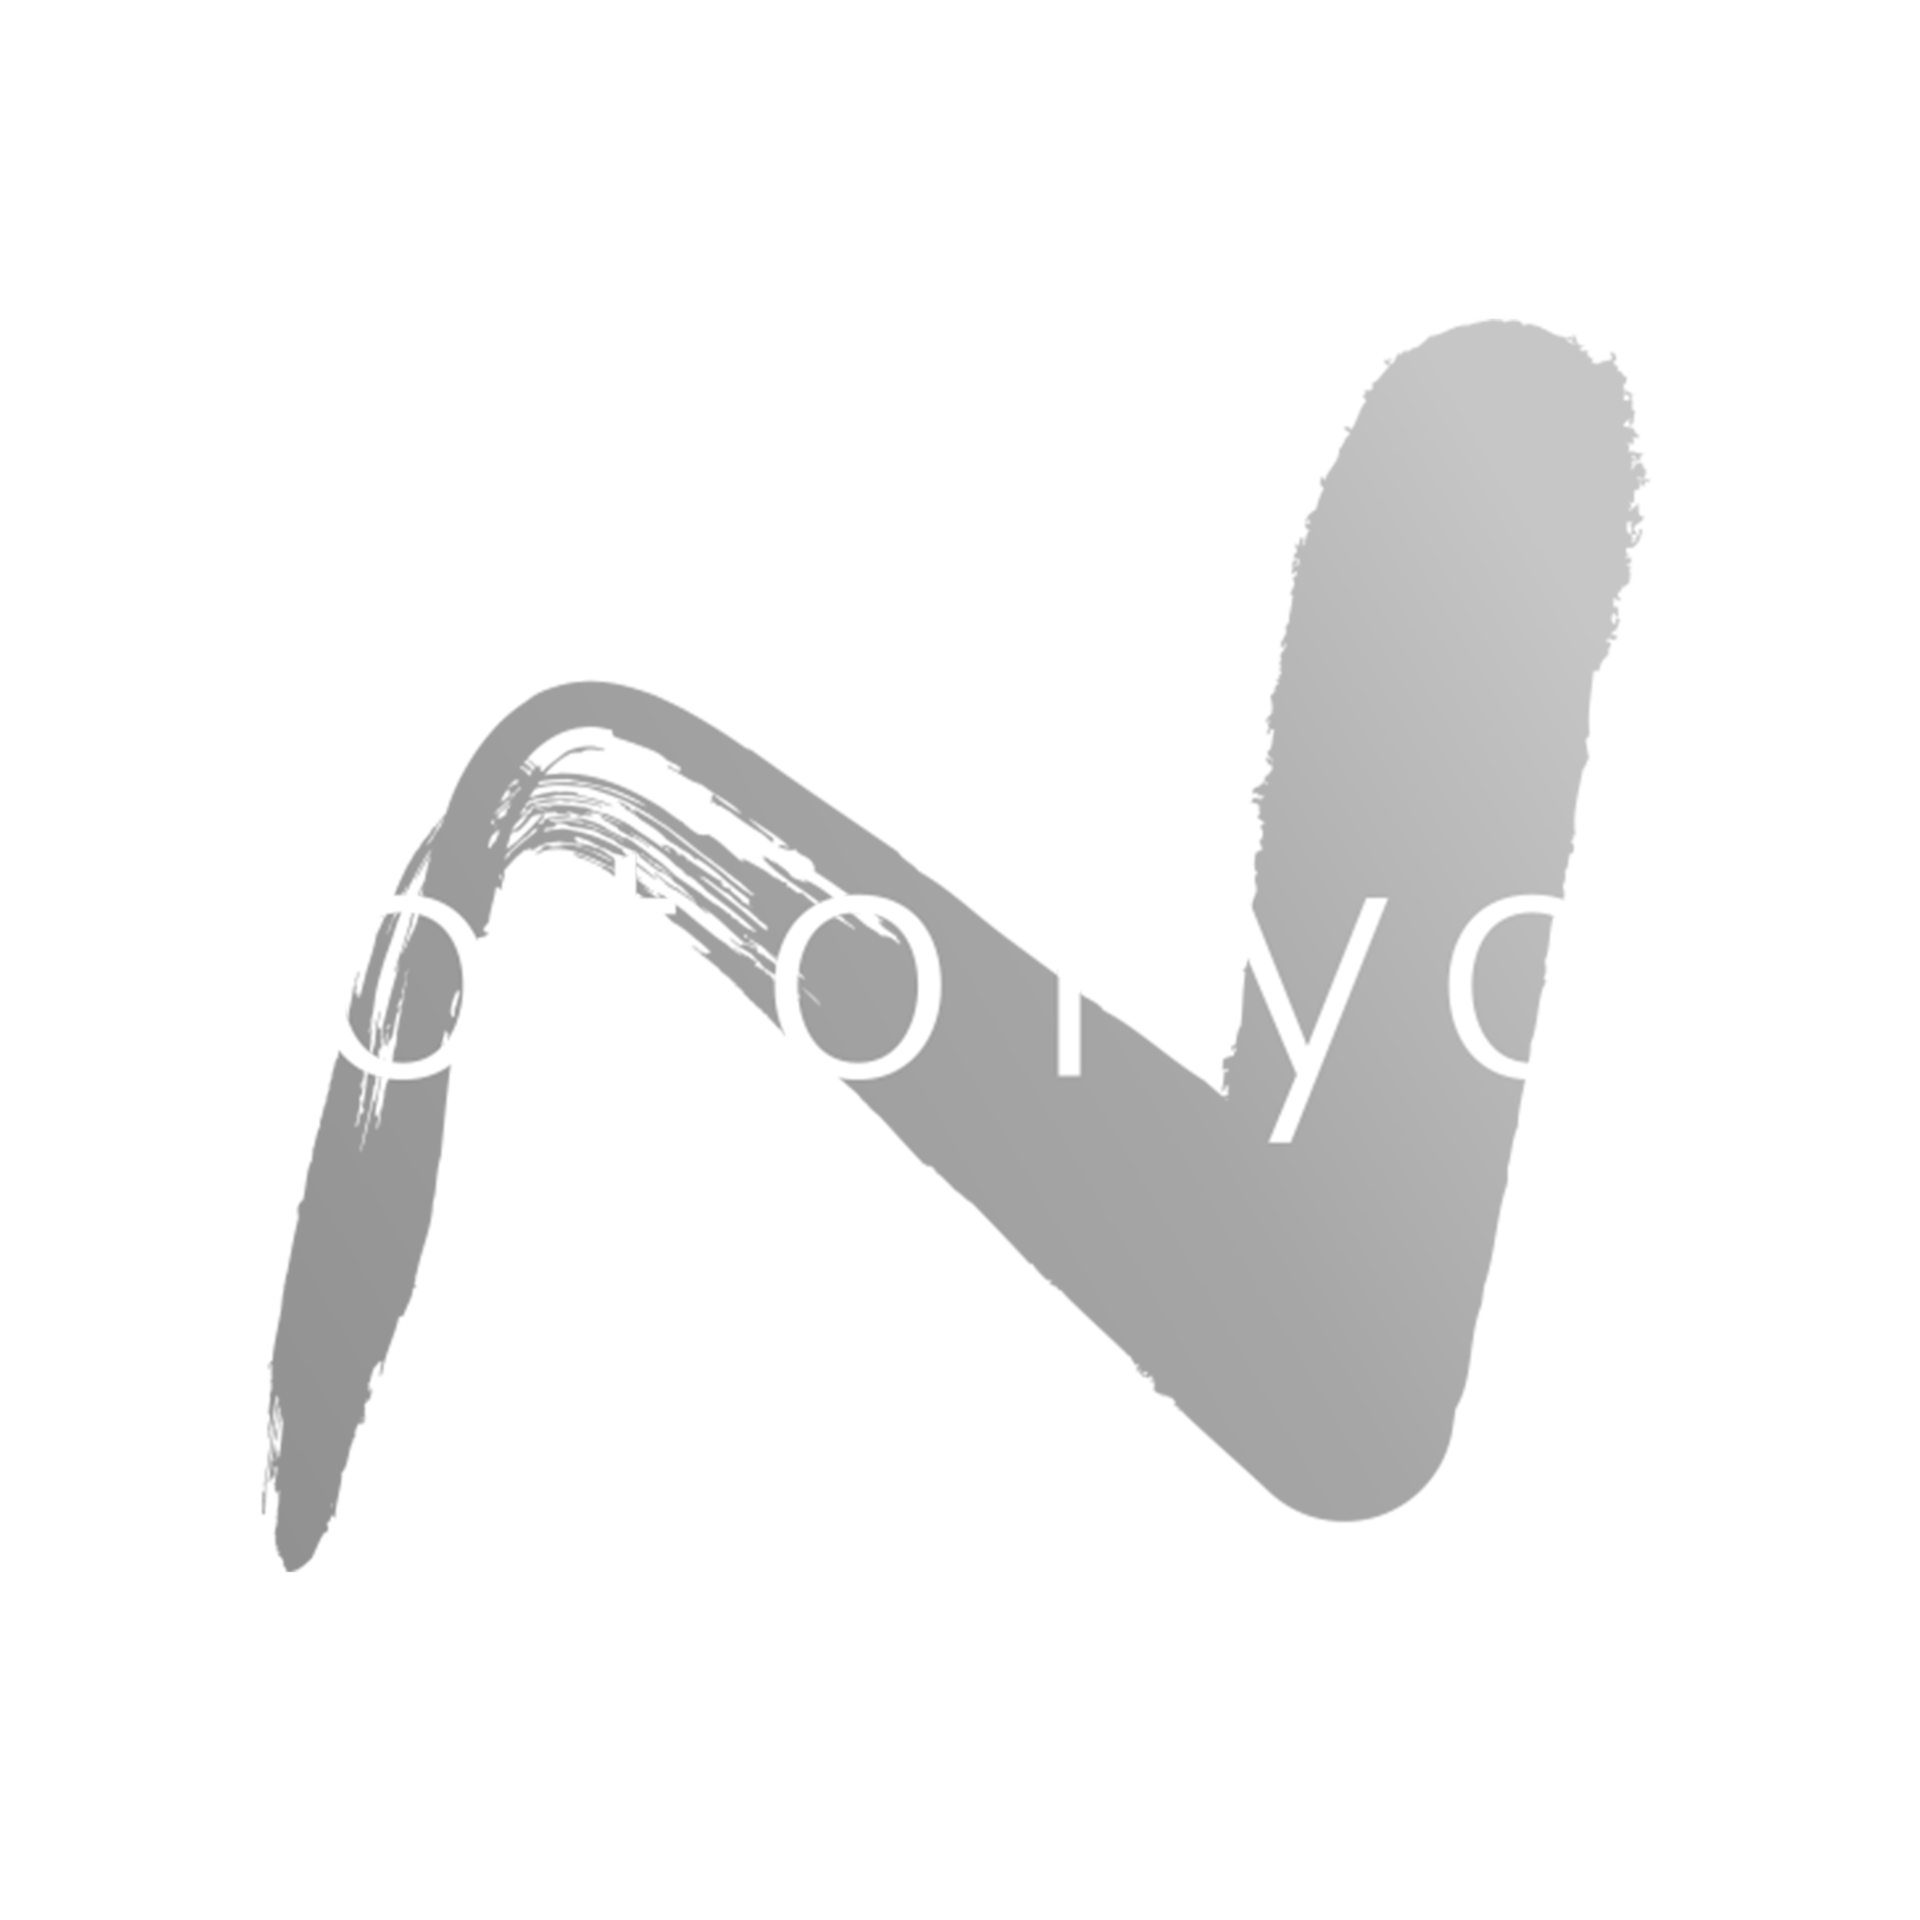 Notoryou